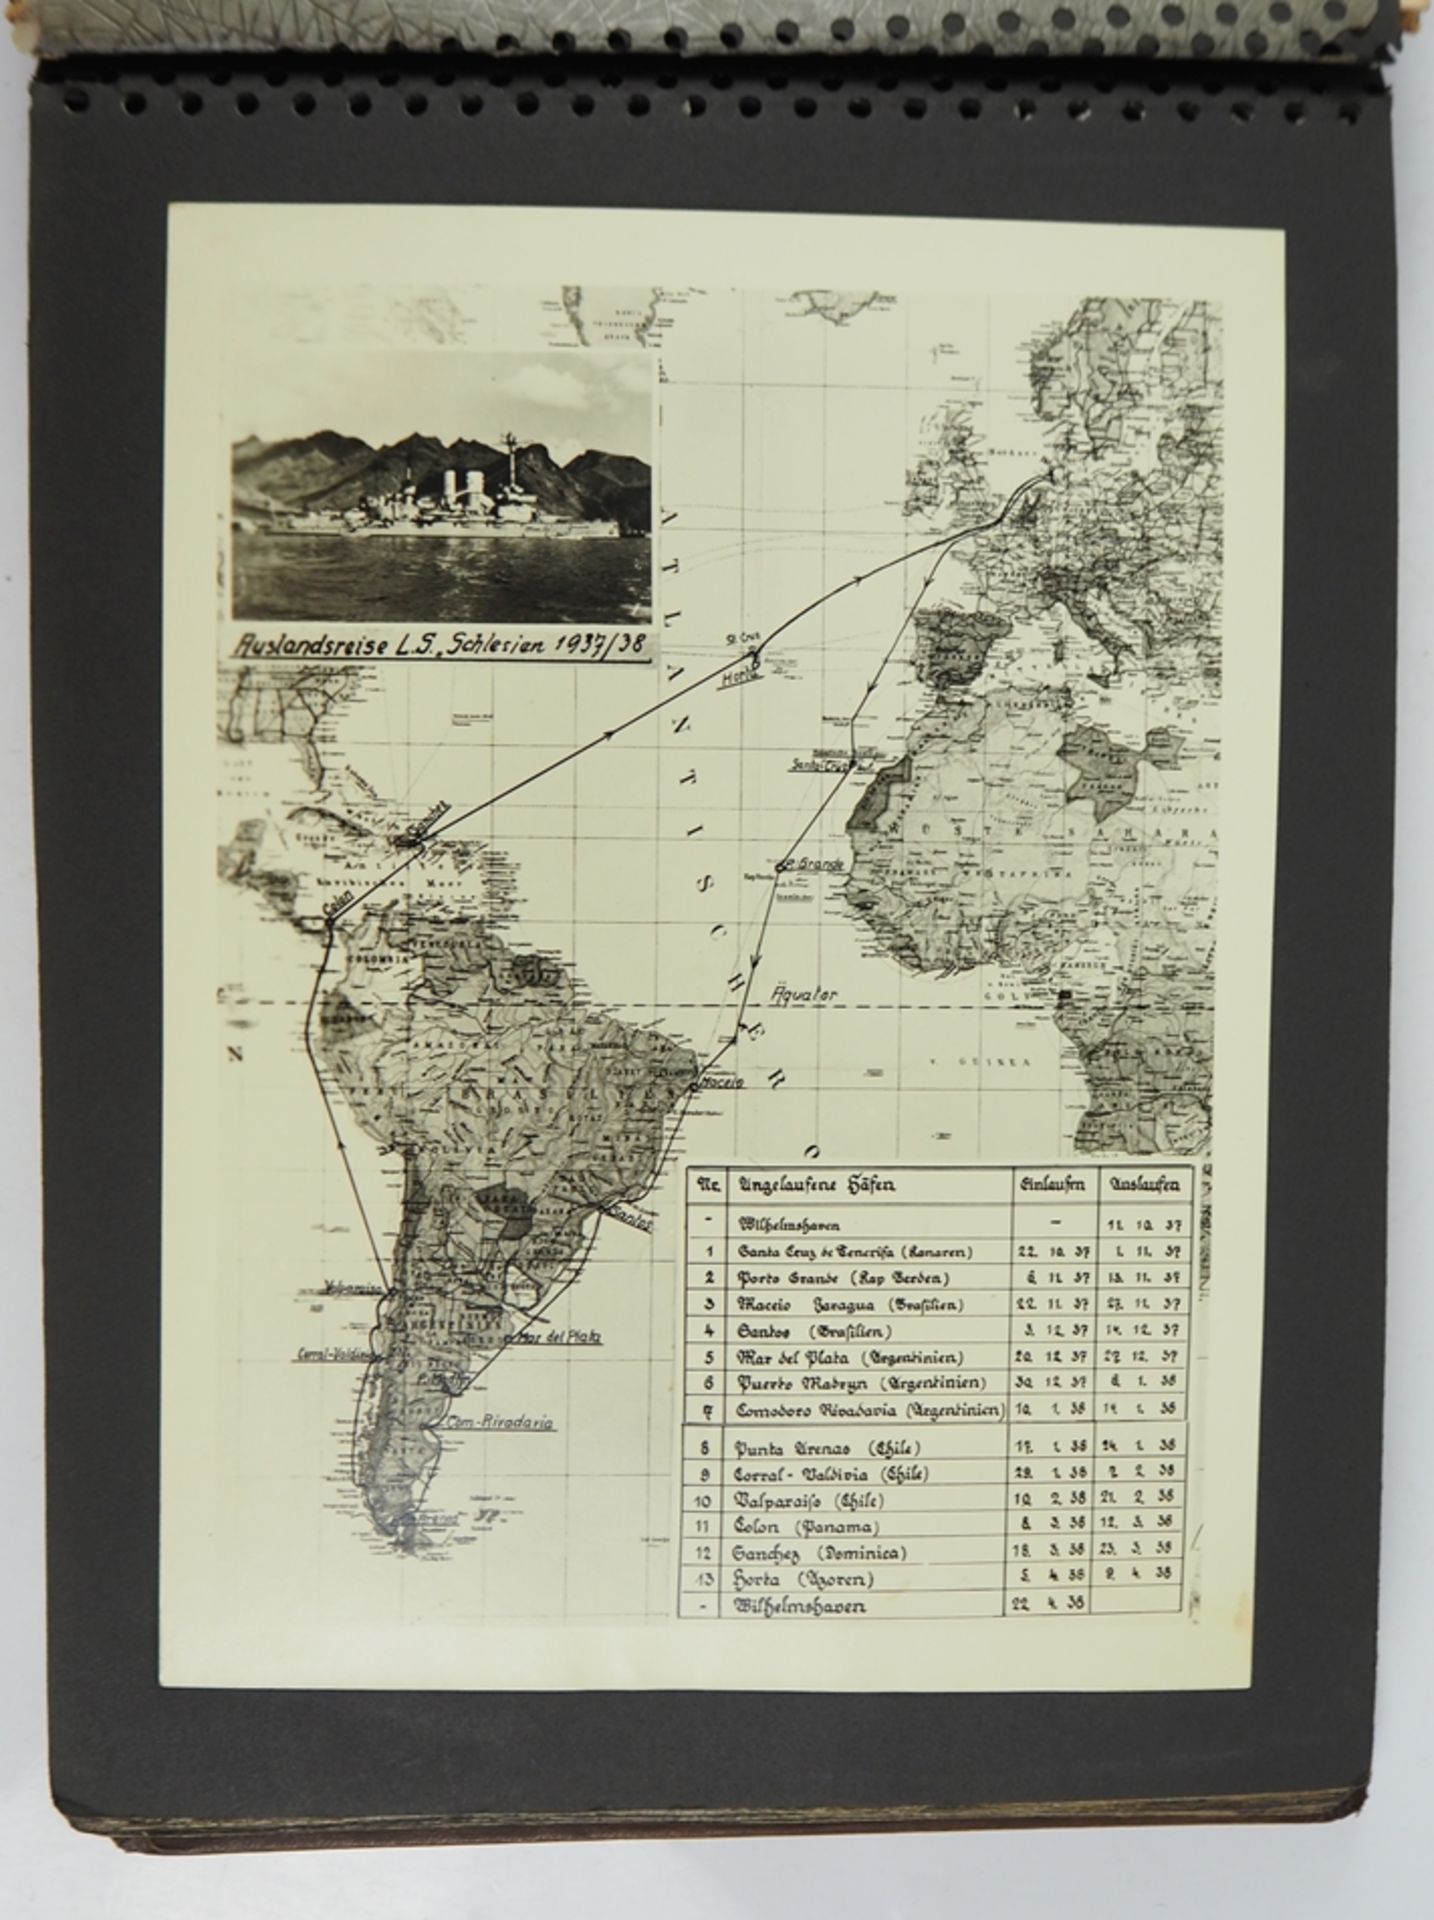 Fotoalbum der Auslandsreise des Linienschiff Schlesien 1937-38. - Image 9 of 9